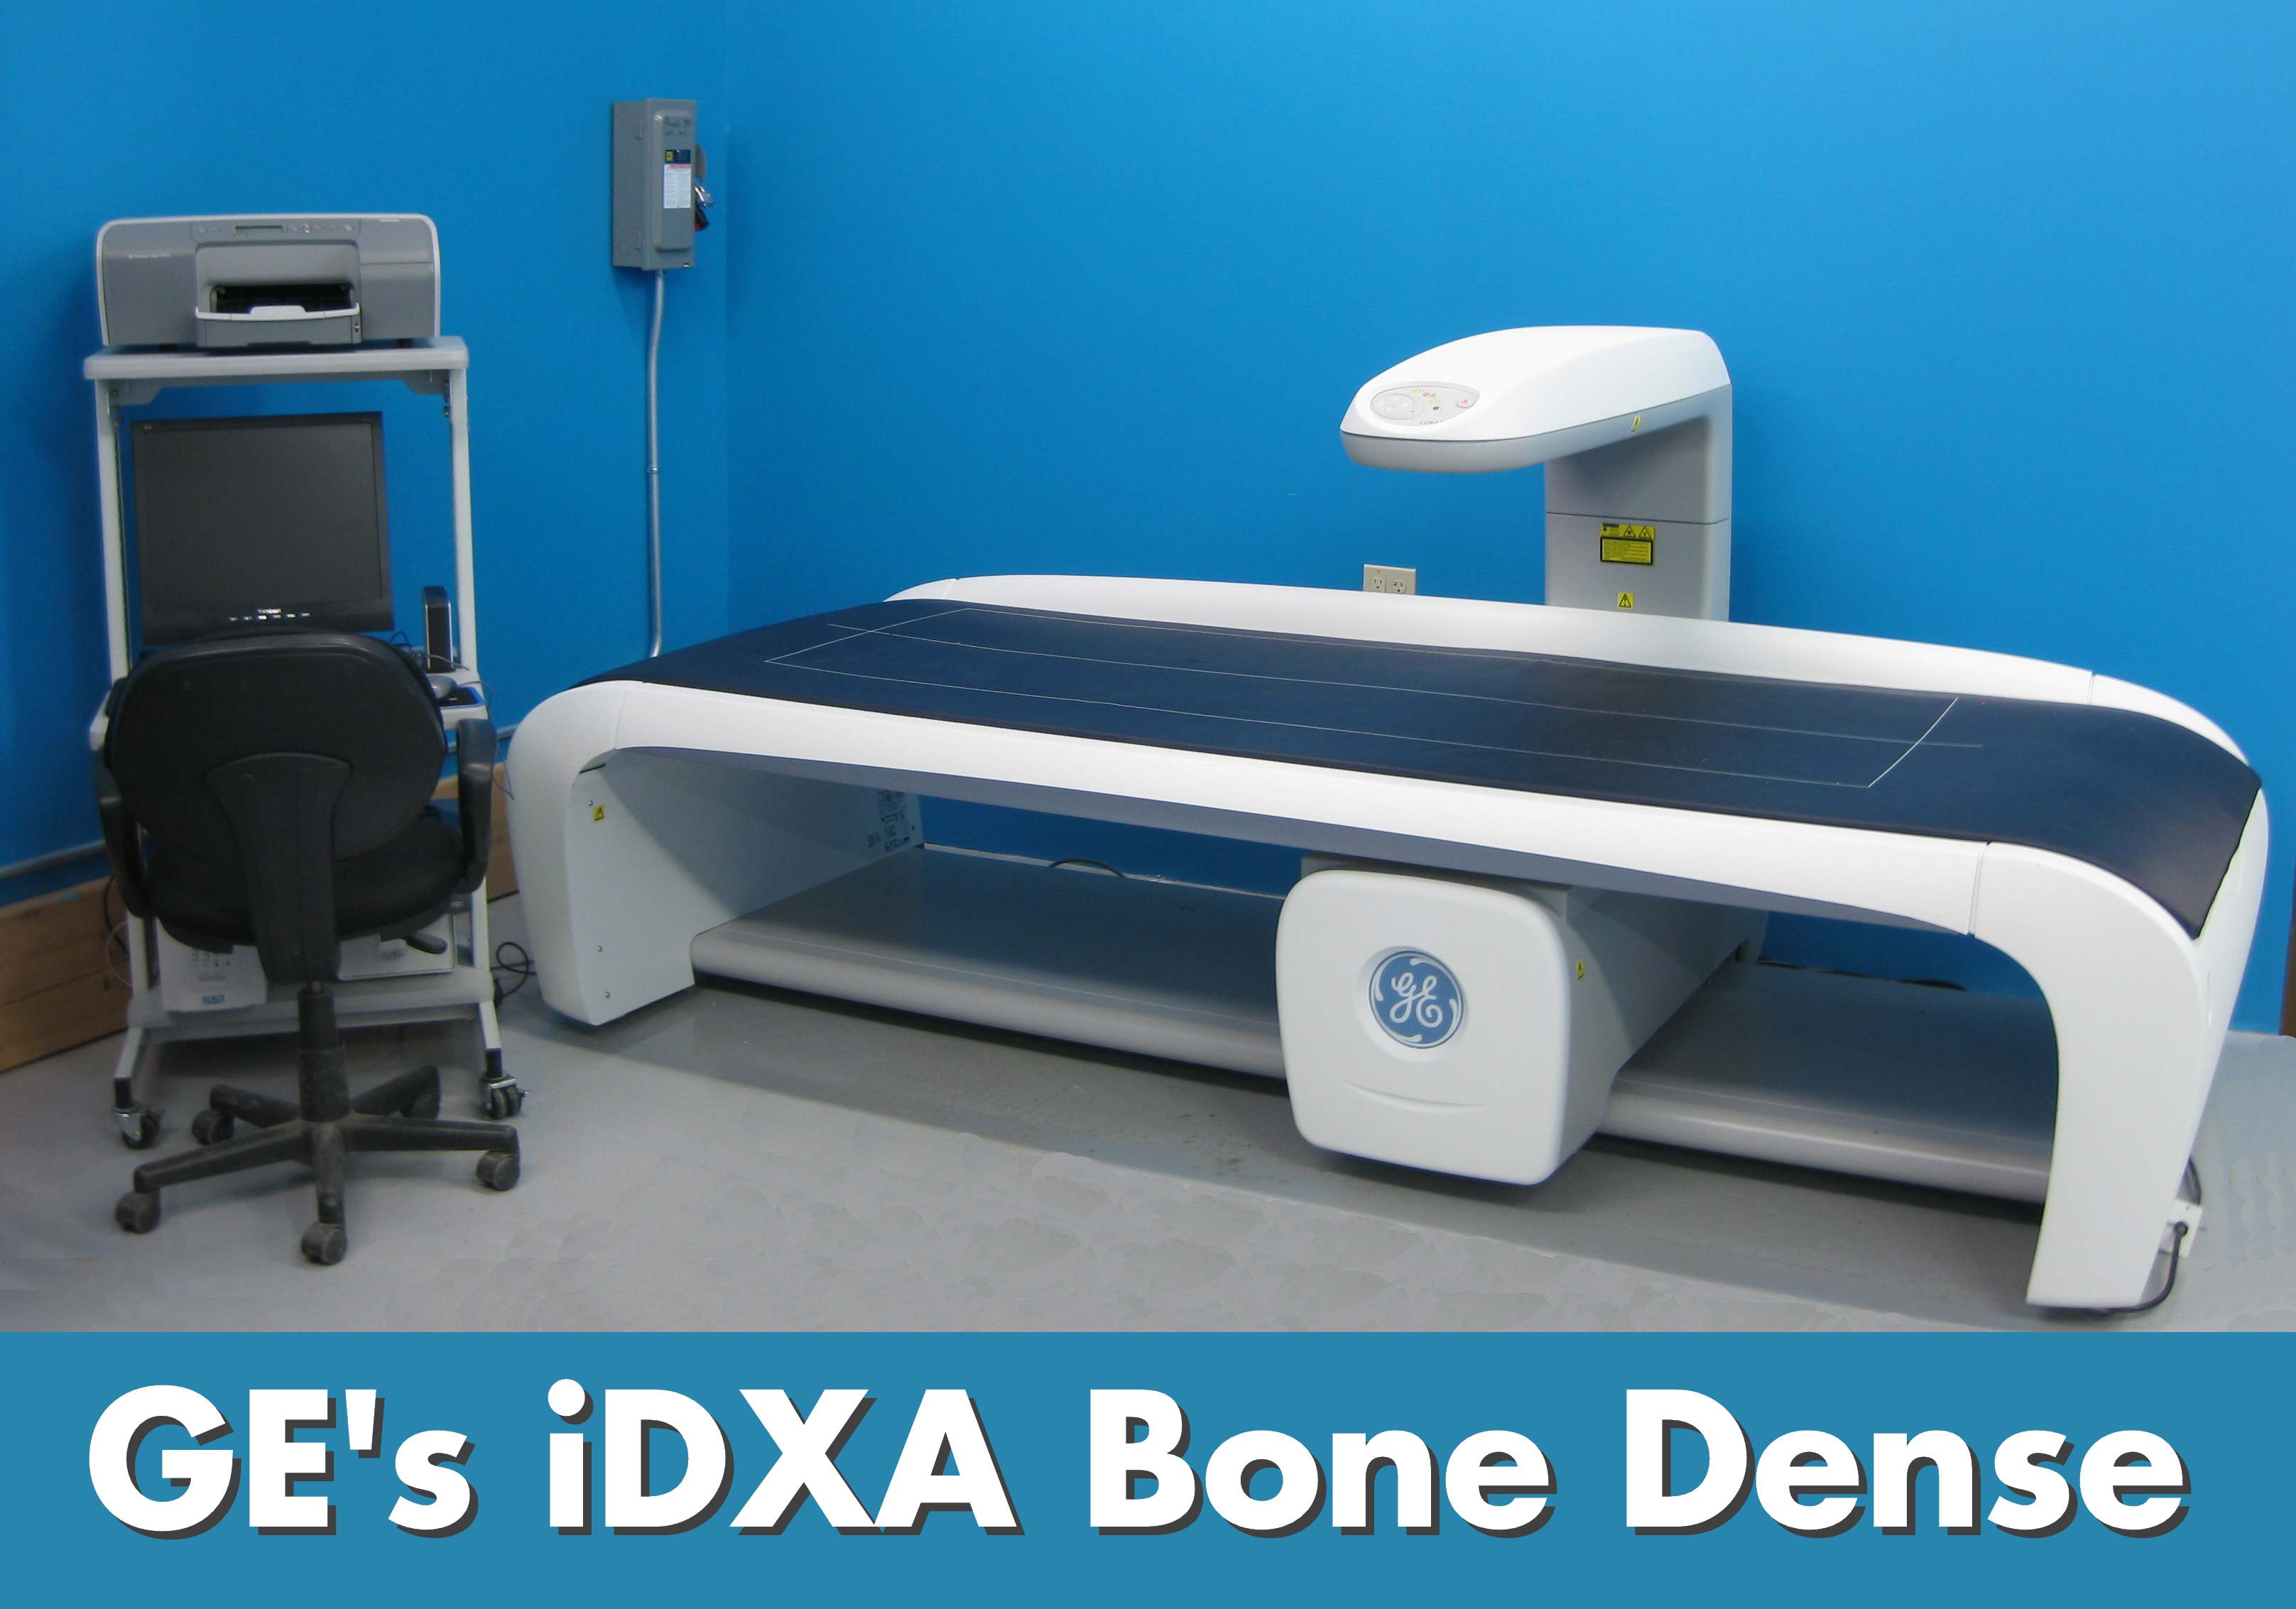 Why GE Lunar iDXA Bone Densitometer?